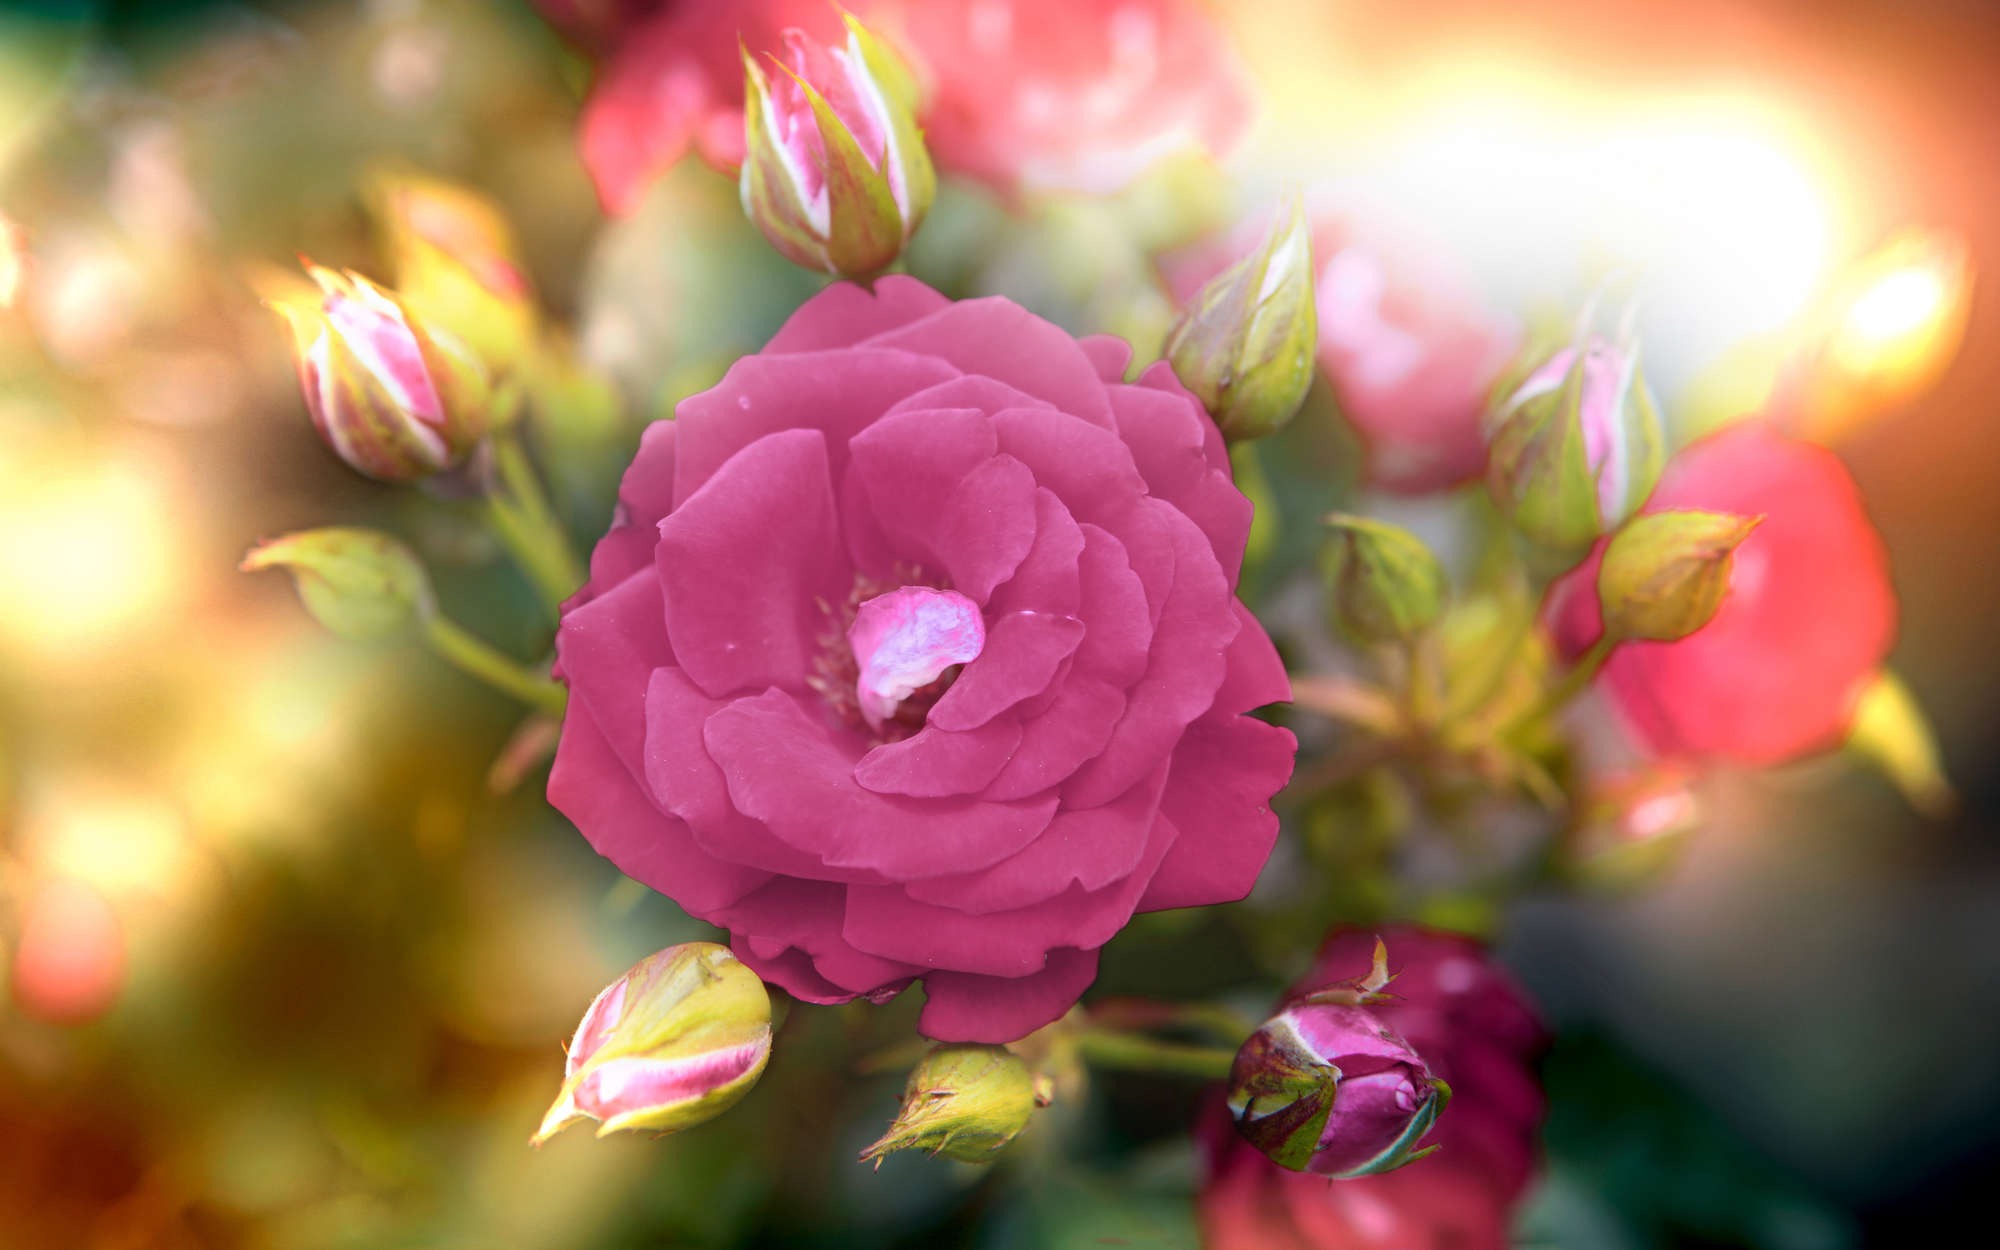             Fotomurali fiore con sbocciatura in rosa - vello liscio madreperlato
        